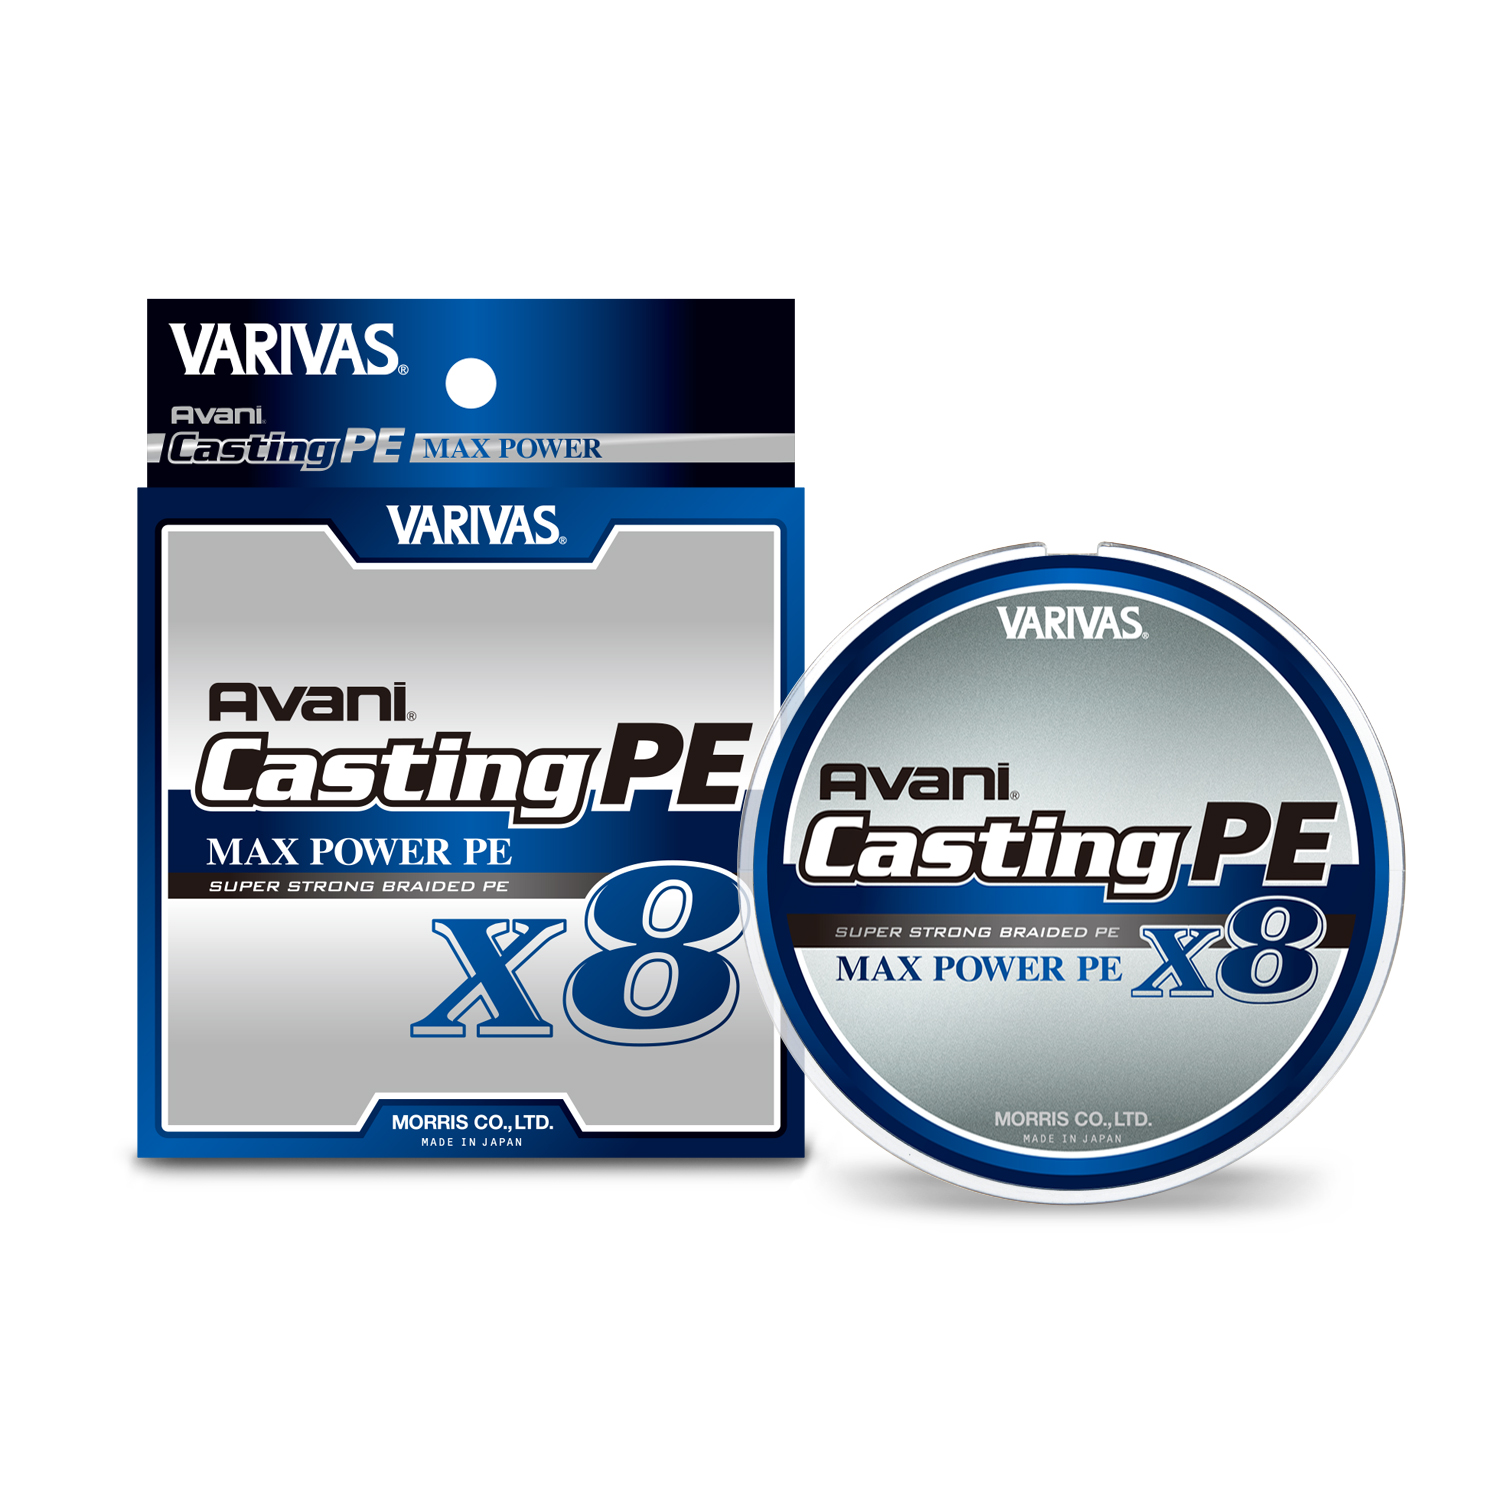 VARIVAS Avani Jigging 10x10 Max Power PE X8 300m #1.5 28.6lb Braid Line Fishing for sale online 